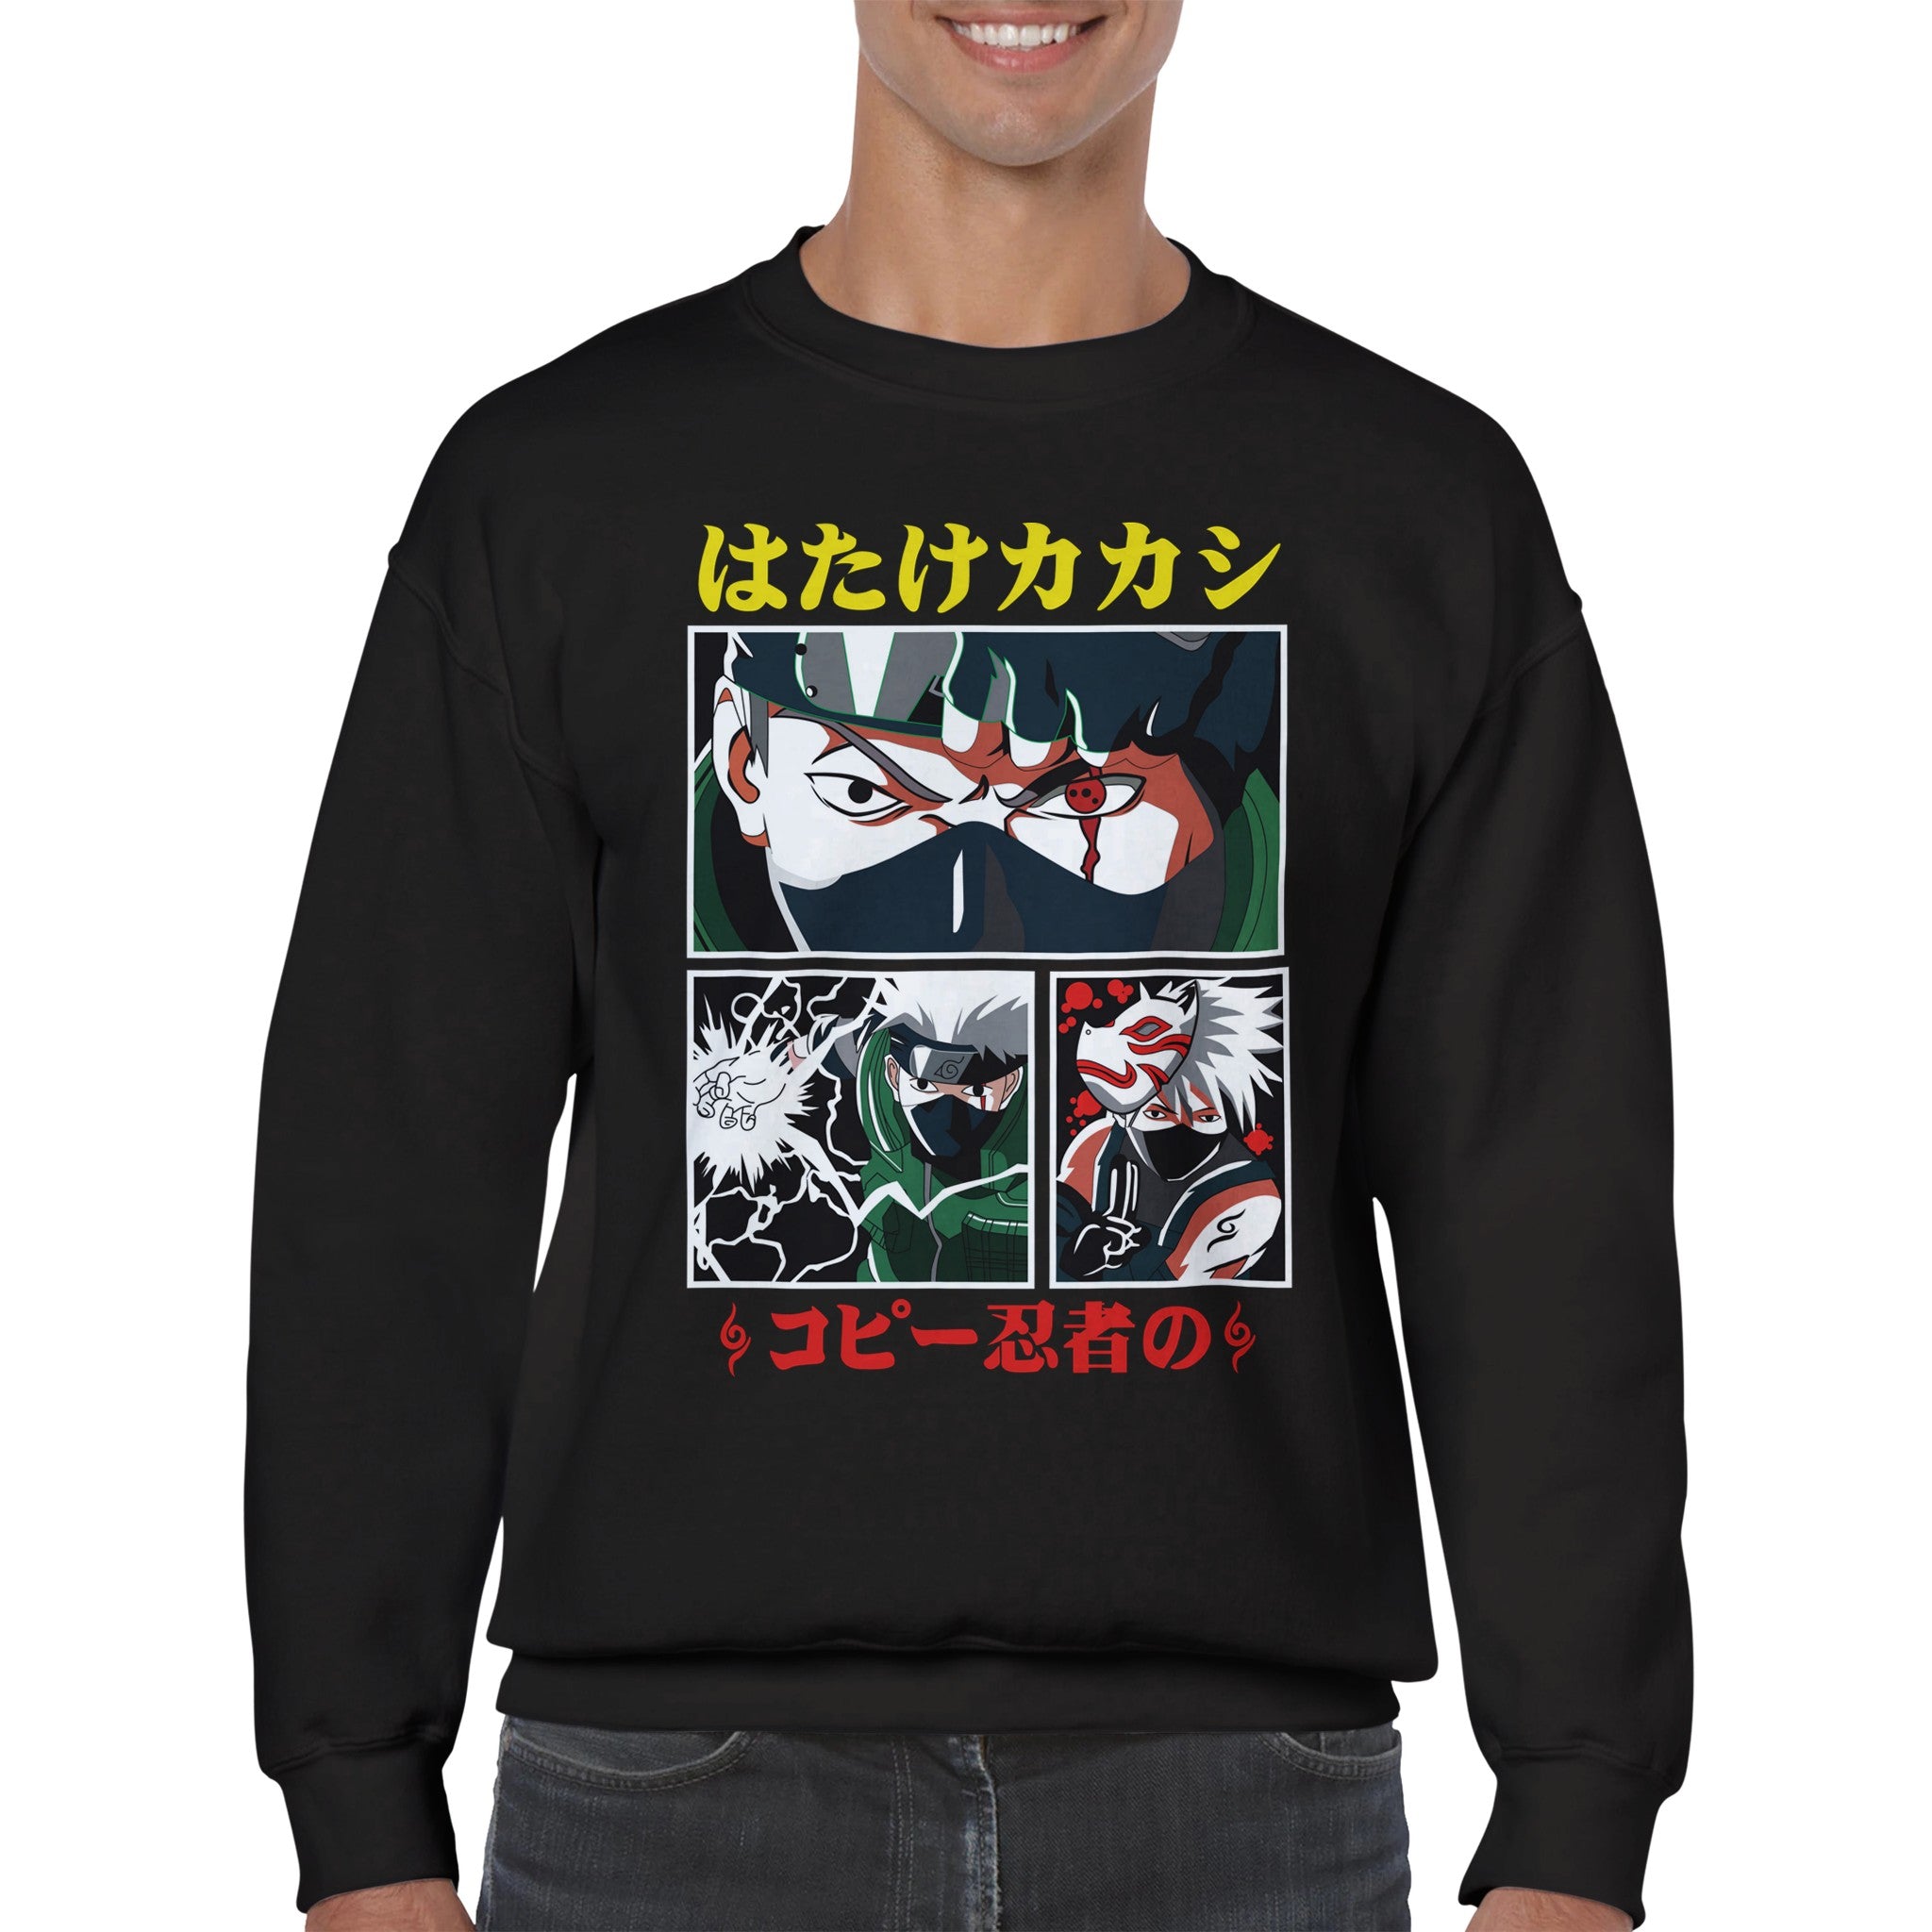 shop and buy kakashi anime clothing sweatshirt/jumper/longsleeve